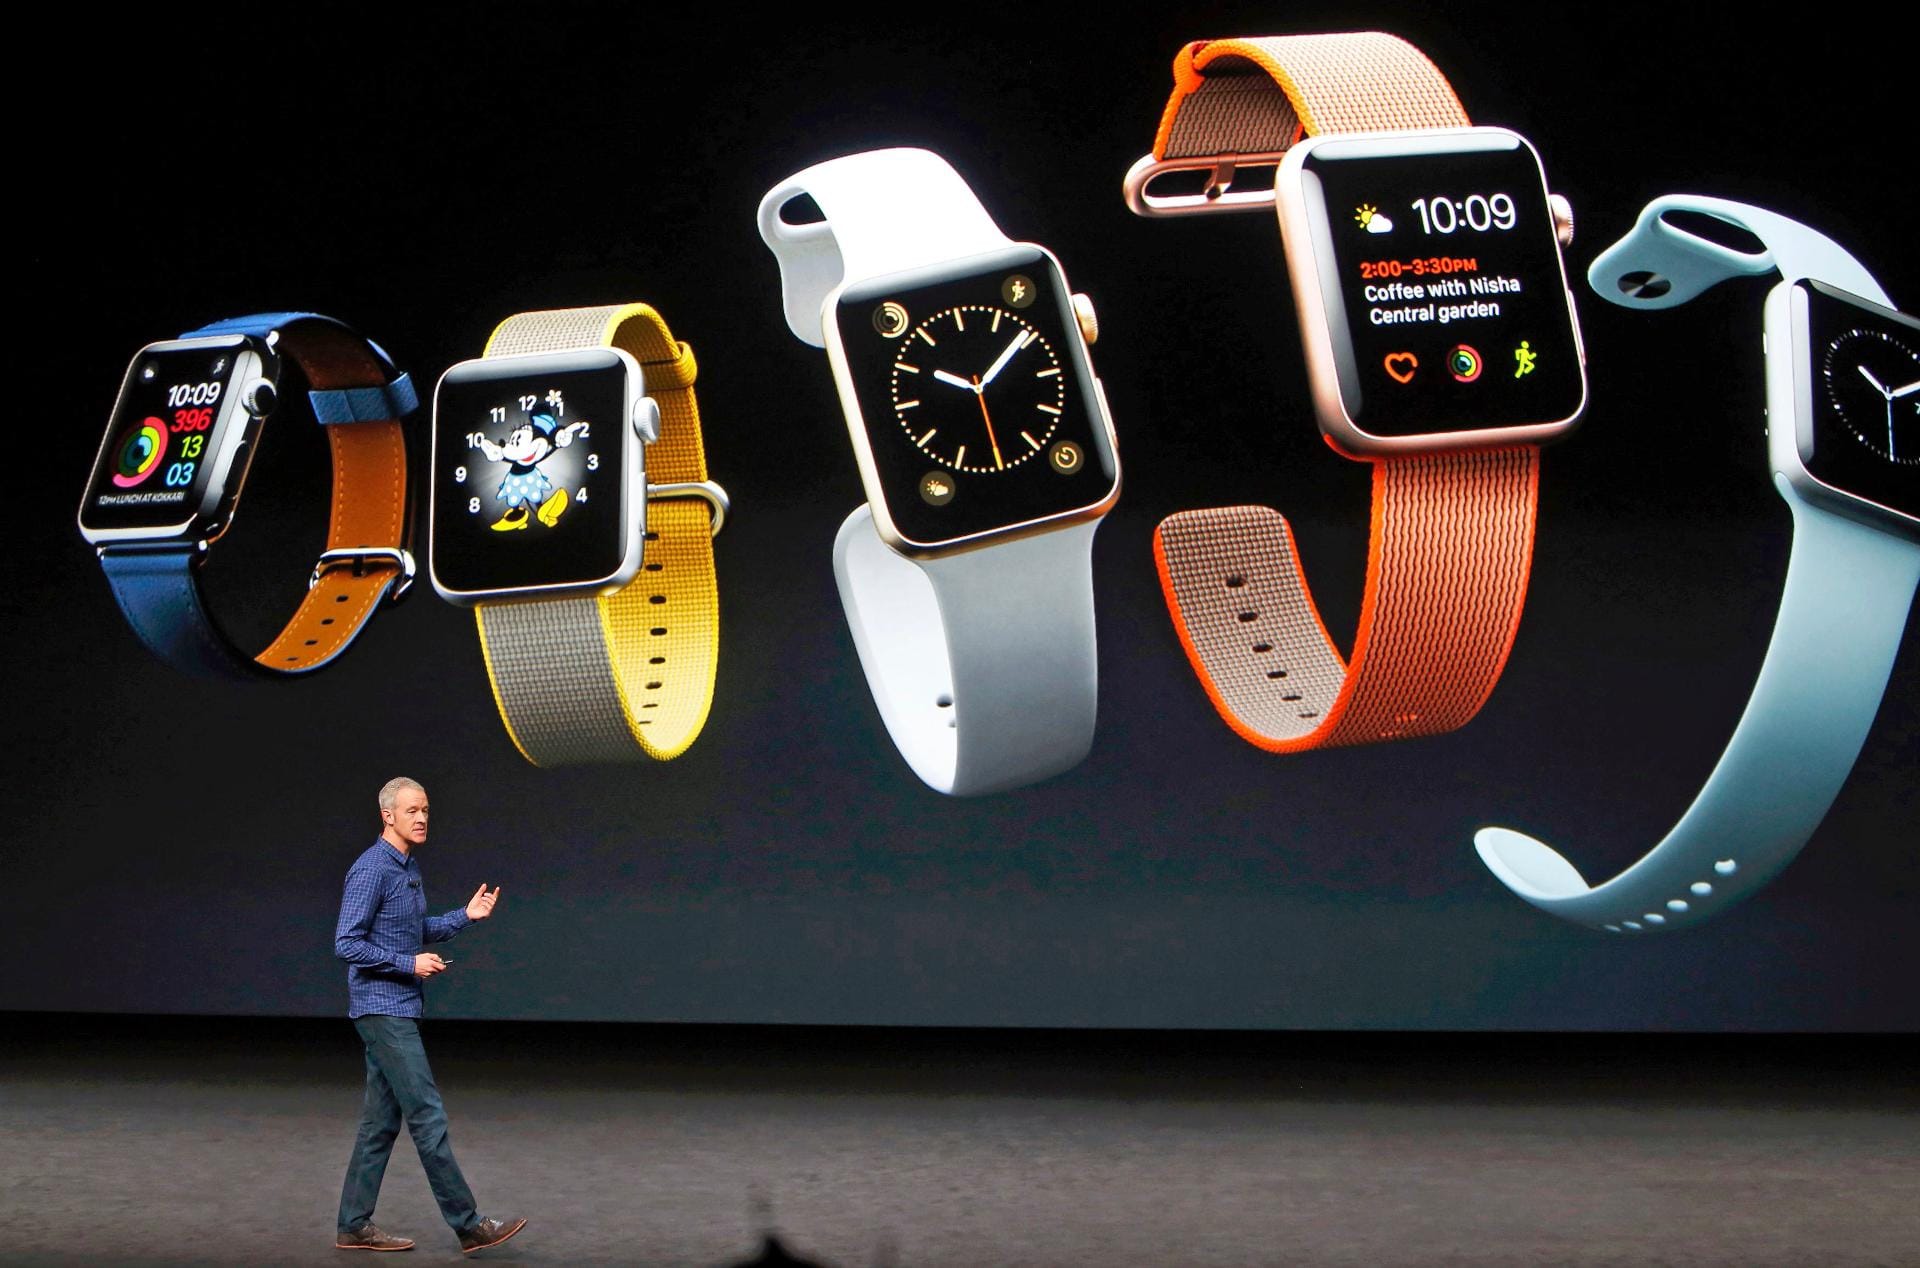 Die Apple Watch Series 2 gibt es erstmals auch mit einem Keramik-Gehäuse. Die Uhr hat einen schnelleren Prozessor und ein brillanteres Display.